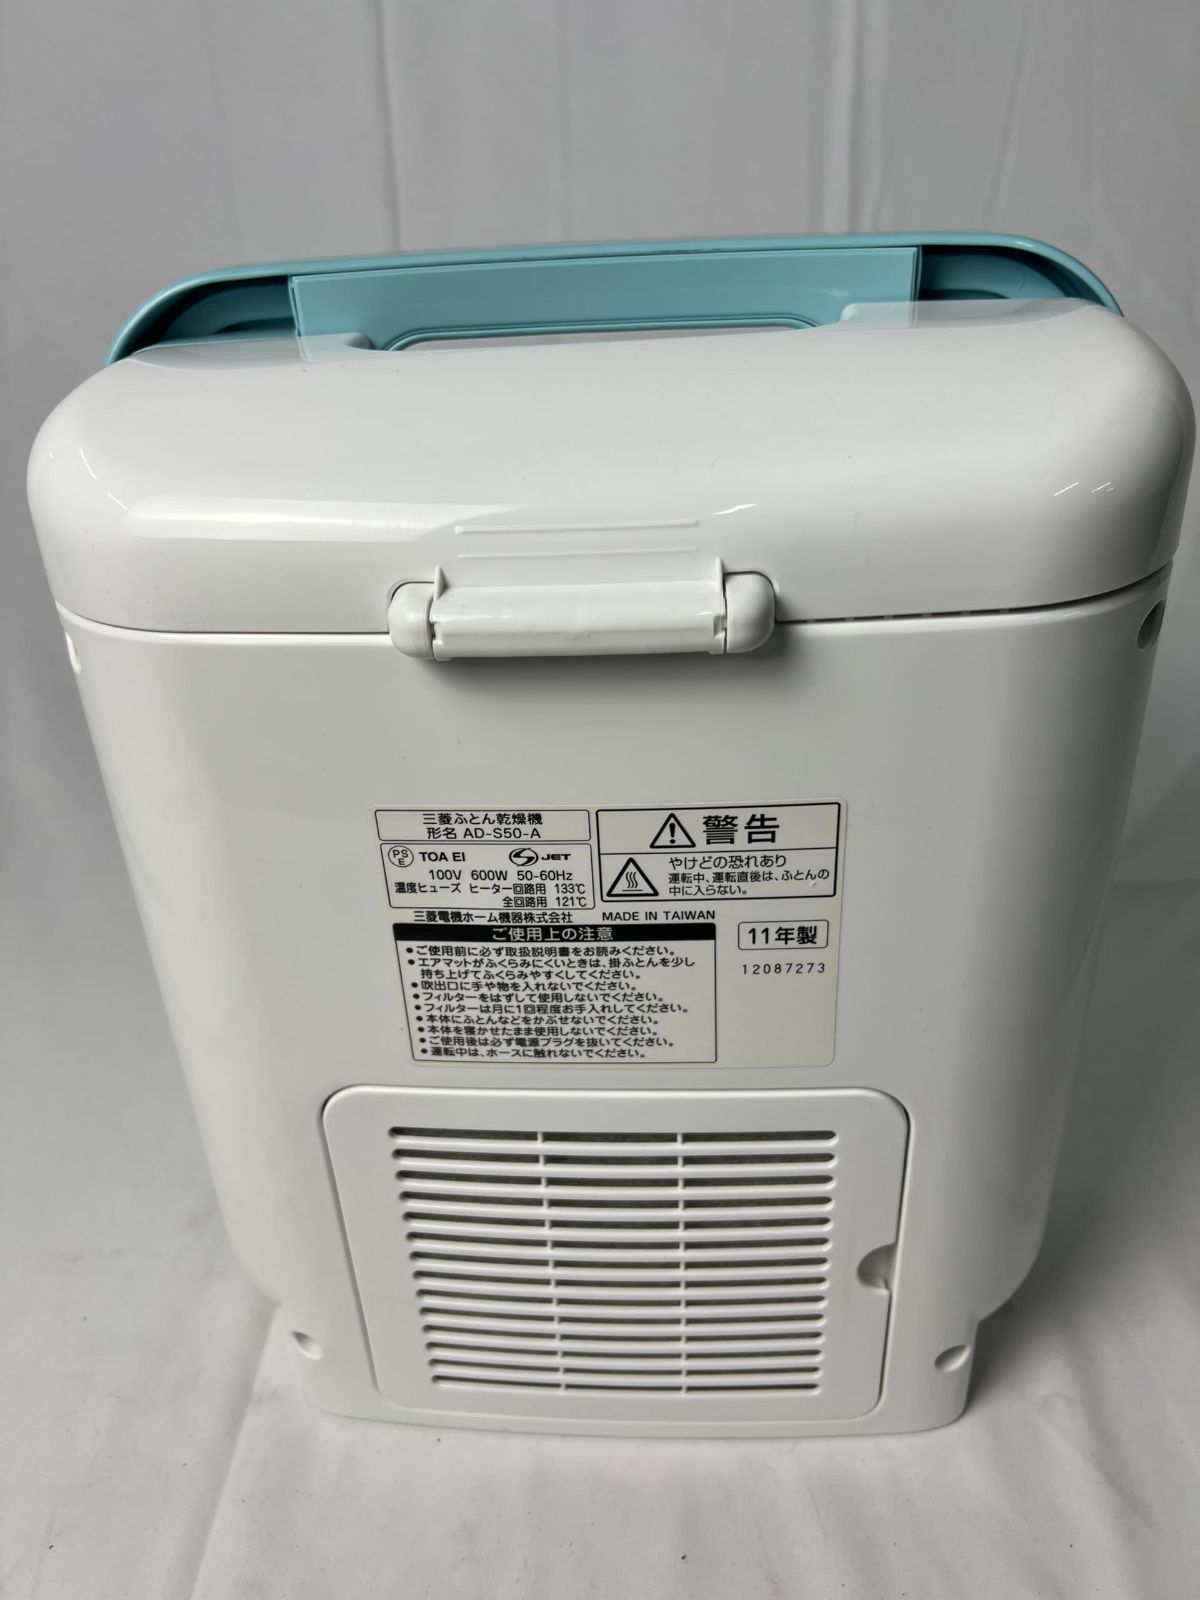 三菱電機 AD-S50-A ふとん乾燥機 ターコイズブルー - 衣類乾燥機